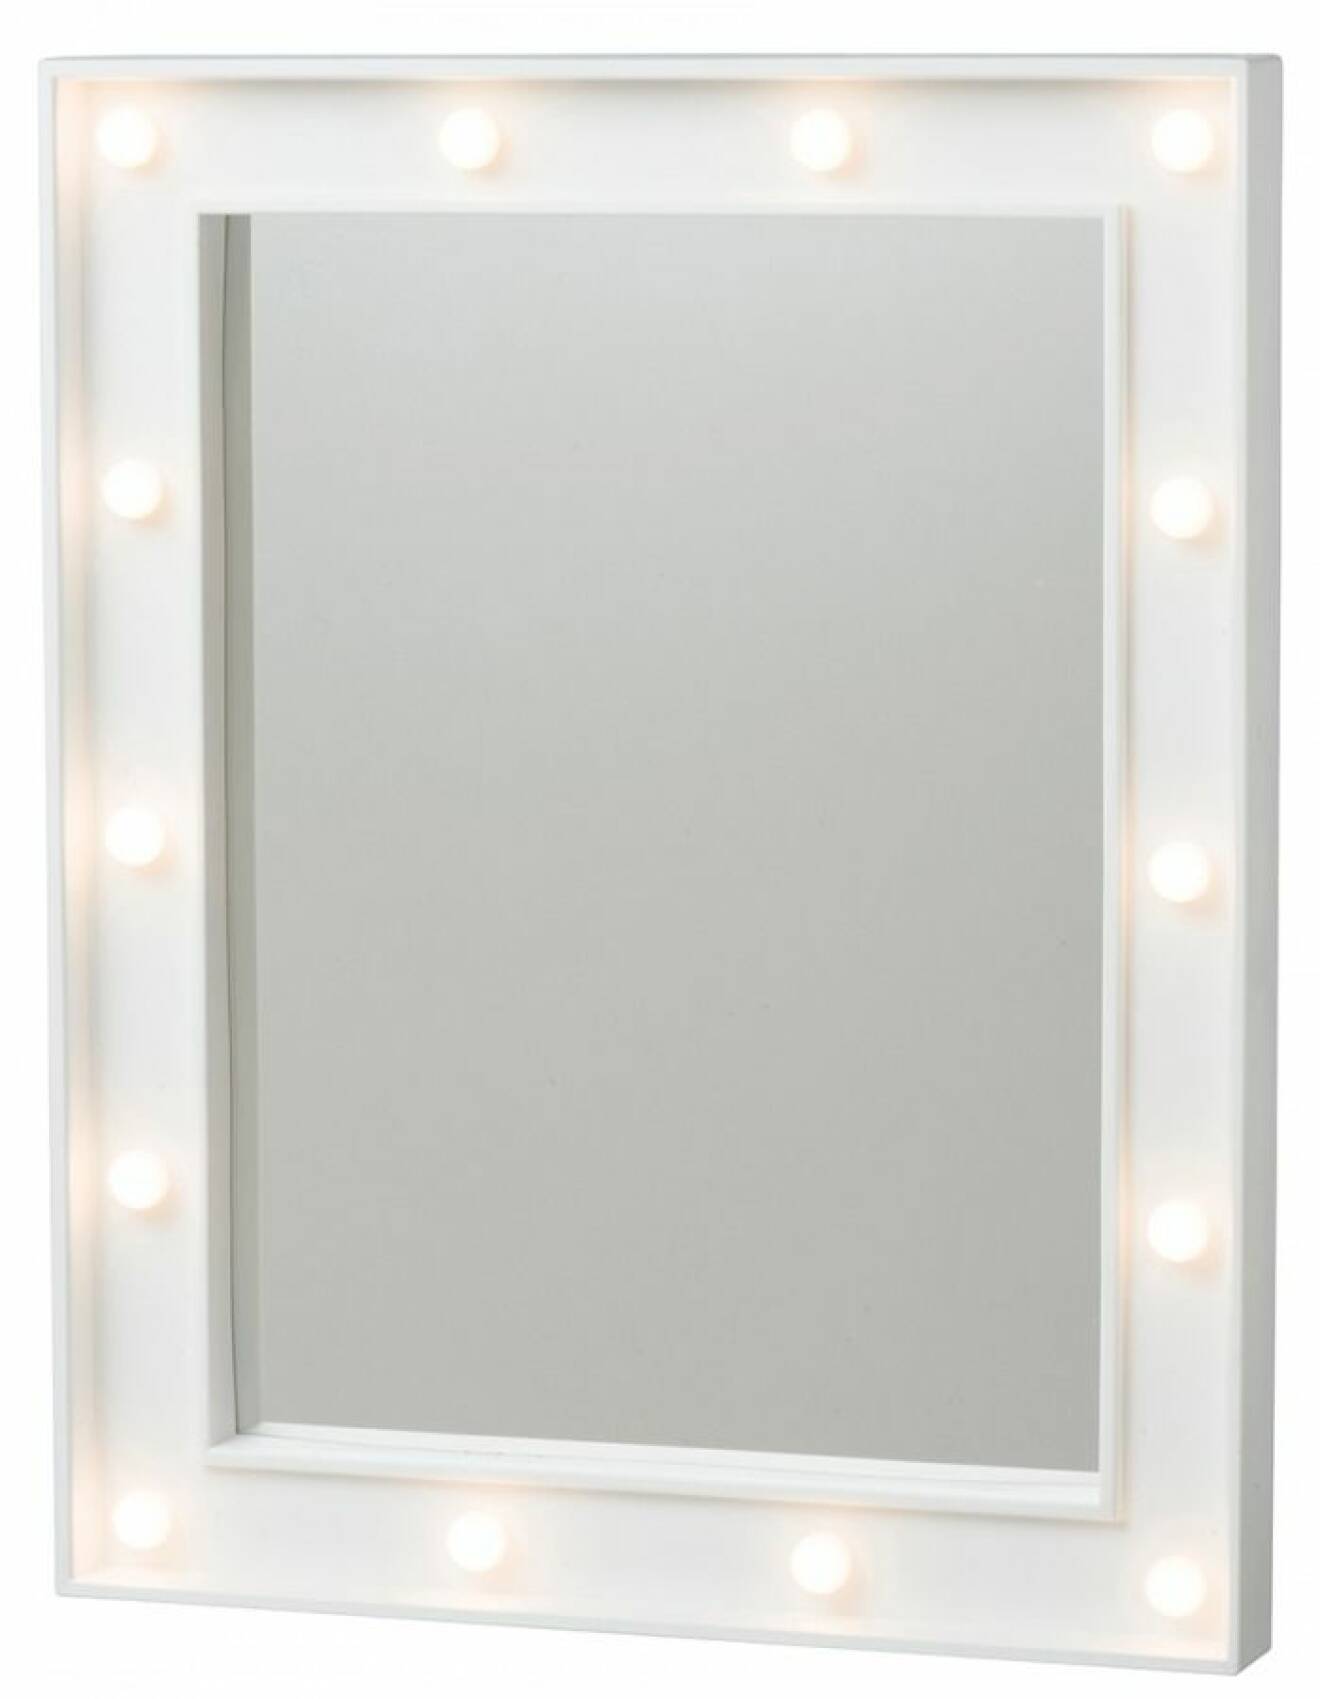 Spegel med belysning, från Rusta